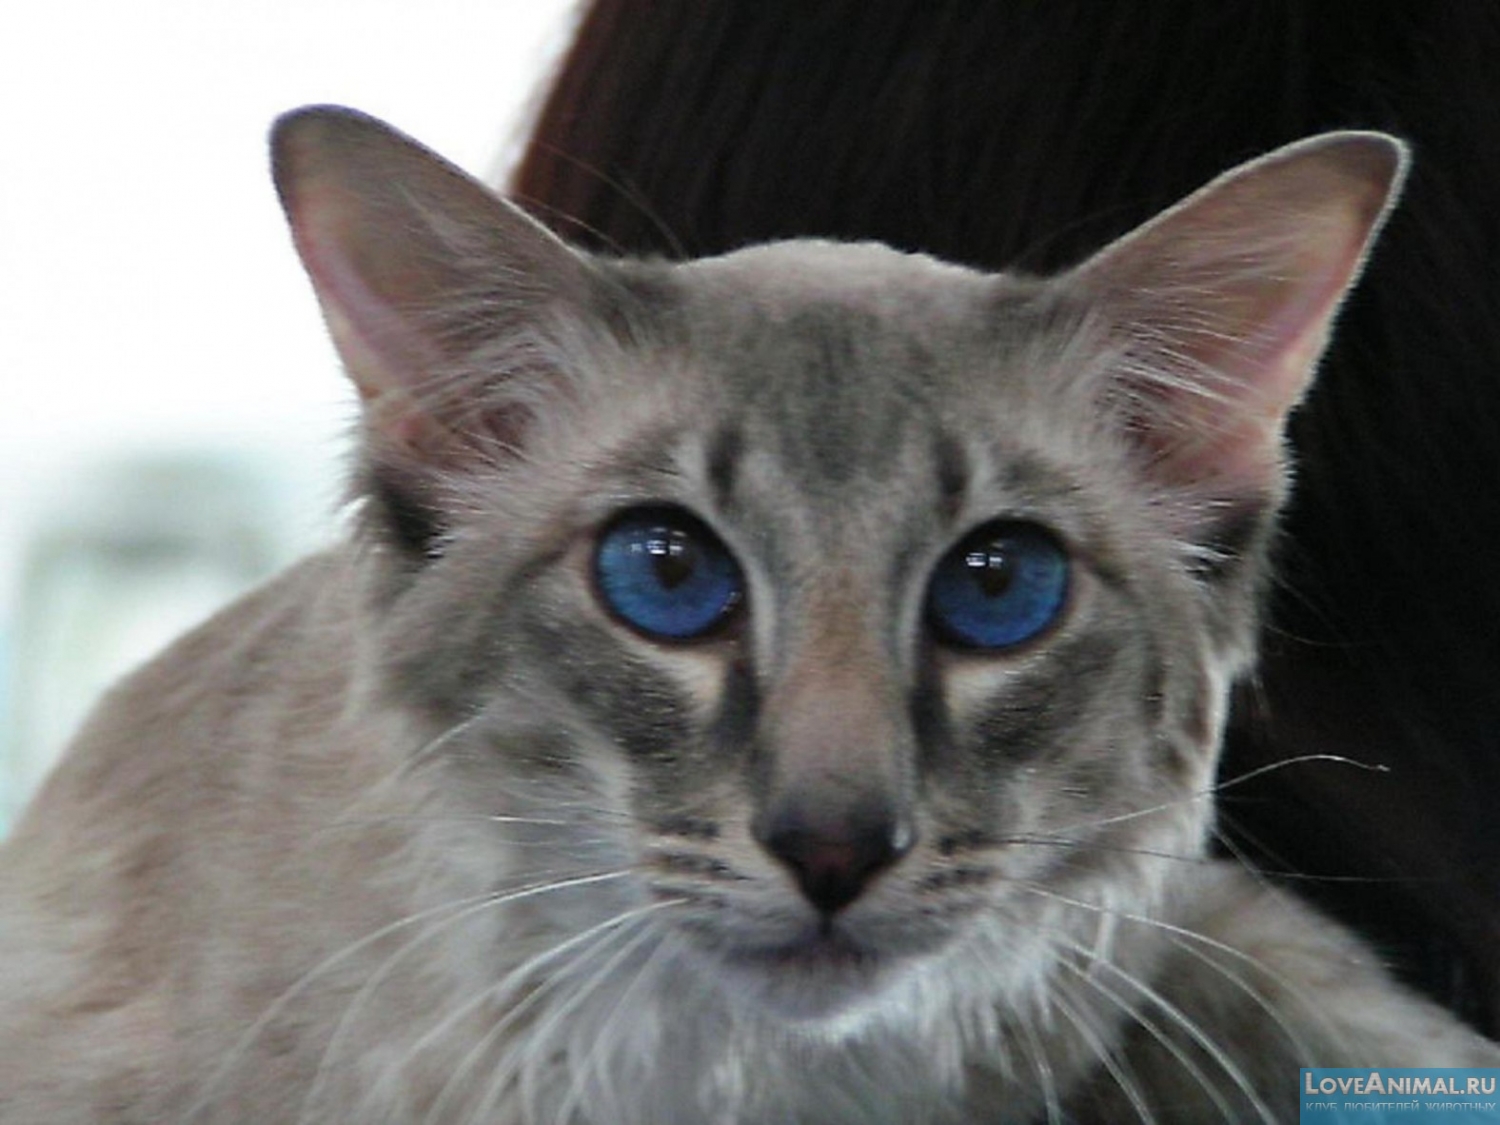 Яванская кошка, яванез, Javanese cat. Описание с фото и видео